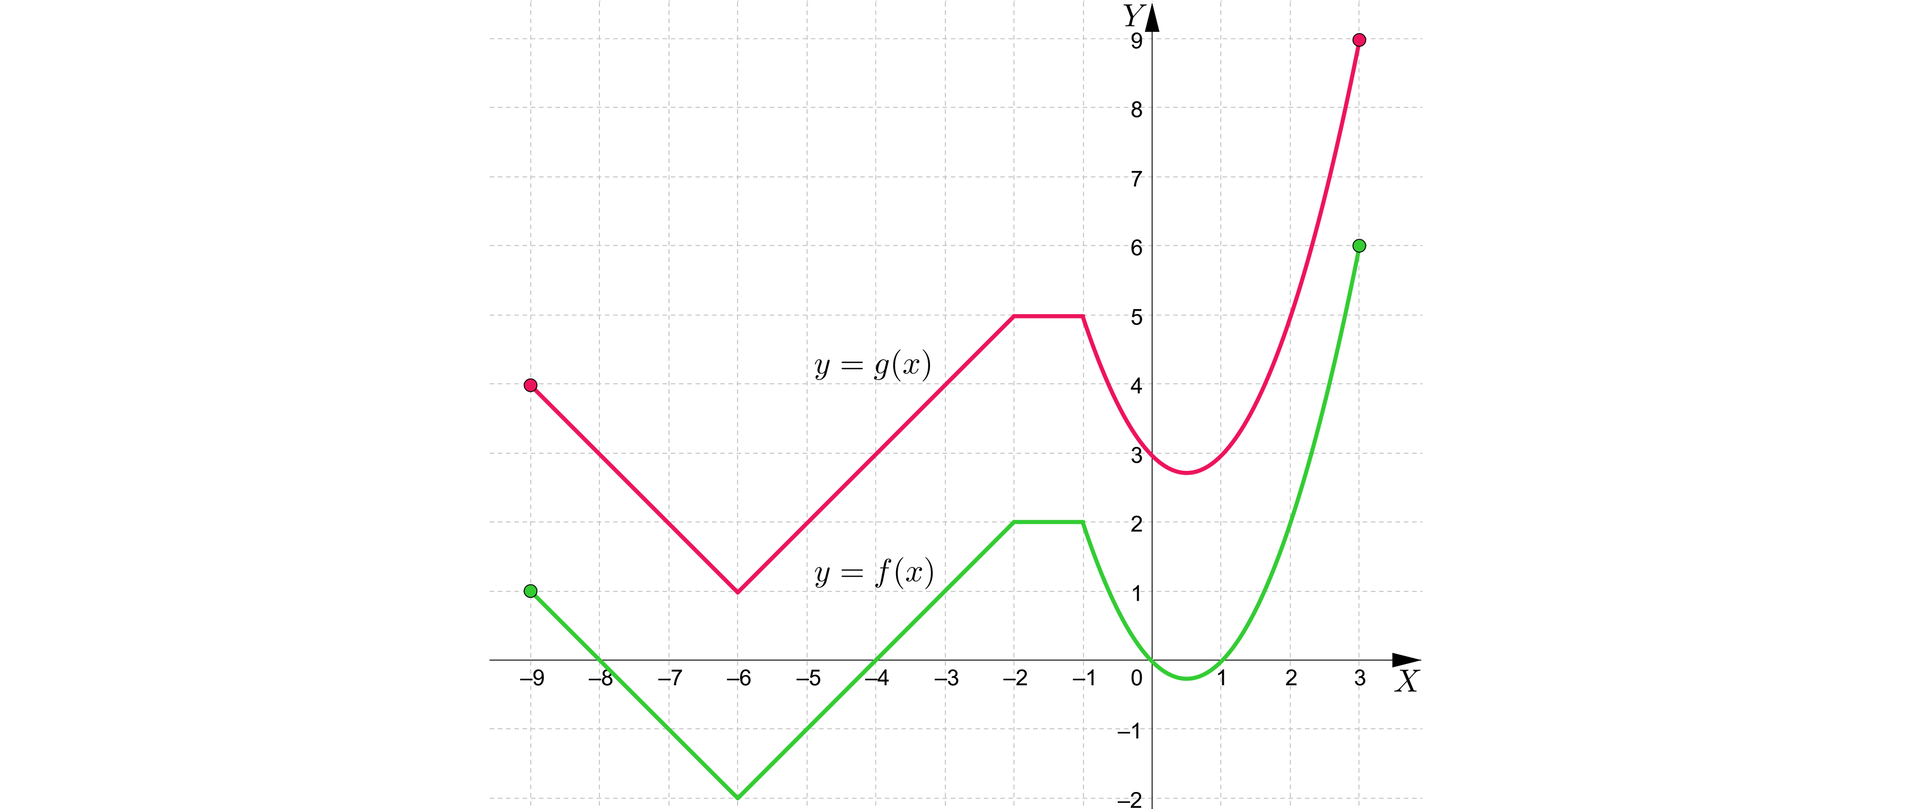 Ilustracja przedstawia poziomą oś X od minus dziewięciu do trzech oraz pionową oś Y od minus dwóch do dziewięciu . Na wykresie zaznaczono wykres funkcji y równa się f od x rozpoczynający się w zamalowanym punkcie nawias minus dziewięć średnik jeden. Wykres maleje do punktu nawias minus sześć średnik minus dwa koniec nawiasu po czym zaczyna rosnąć do punktu nawias minus dwa średnik dwa. Następnie do punktu nawias minus jeden średnik dwa funkcja jest stała. Po osiągnięciu tego punktu funkcja zamienia się w wykres paraboli o wierzchołku w punkcie nawias zero przecinek pięć średnik minus zero przecinek dwadzieścia pięć koniec nawiasu i miejscach zerowych w punktach nawias zero średnik zero koniec nawiasu i nawias jeden średnik zero koniec nawiasu. Wykres funkcji kończy się w punkcie nawias trzy średnik sześć koniec nawiasu. Nad wykresem funkcji f od x znajduje się wykres funkcji g od x. Wykres ten jest taki sam jak wykres funkcji pierwszej przesuniętej o trzy jednostki do góry. Przykładowo funkcja g od x rozpoczyna się w punkcie nawias minus dziewięć średnik cztery koniec nawiasu, a kończy się w punkcie nawias trzy średnik dziewięć koniec nawiasu. 